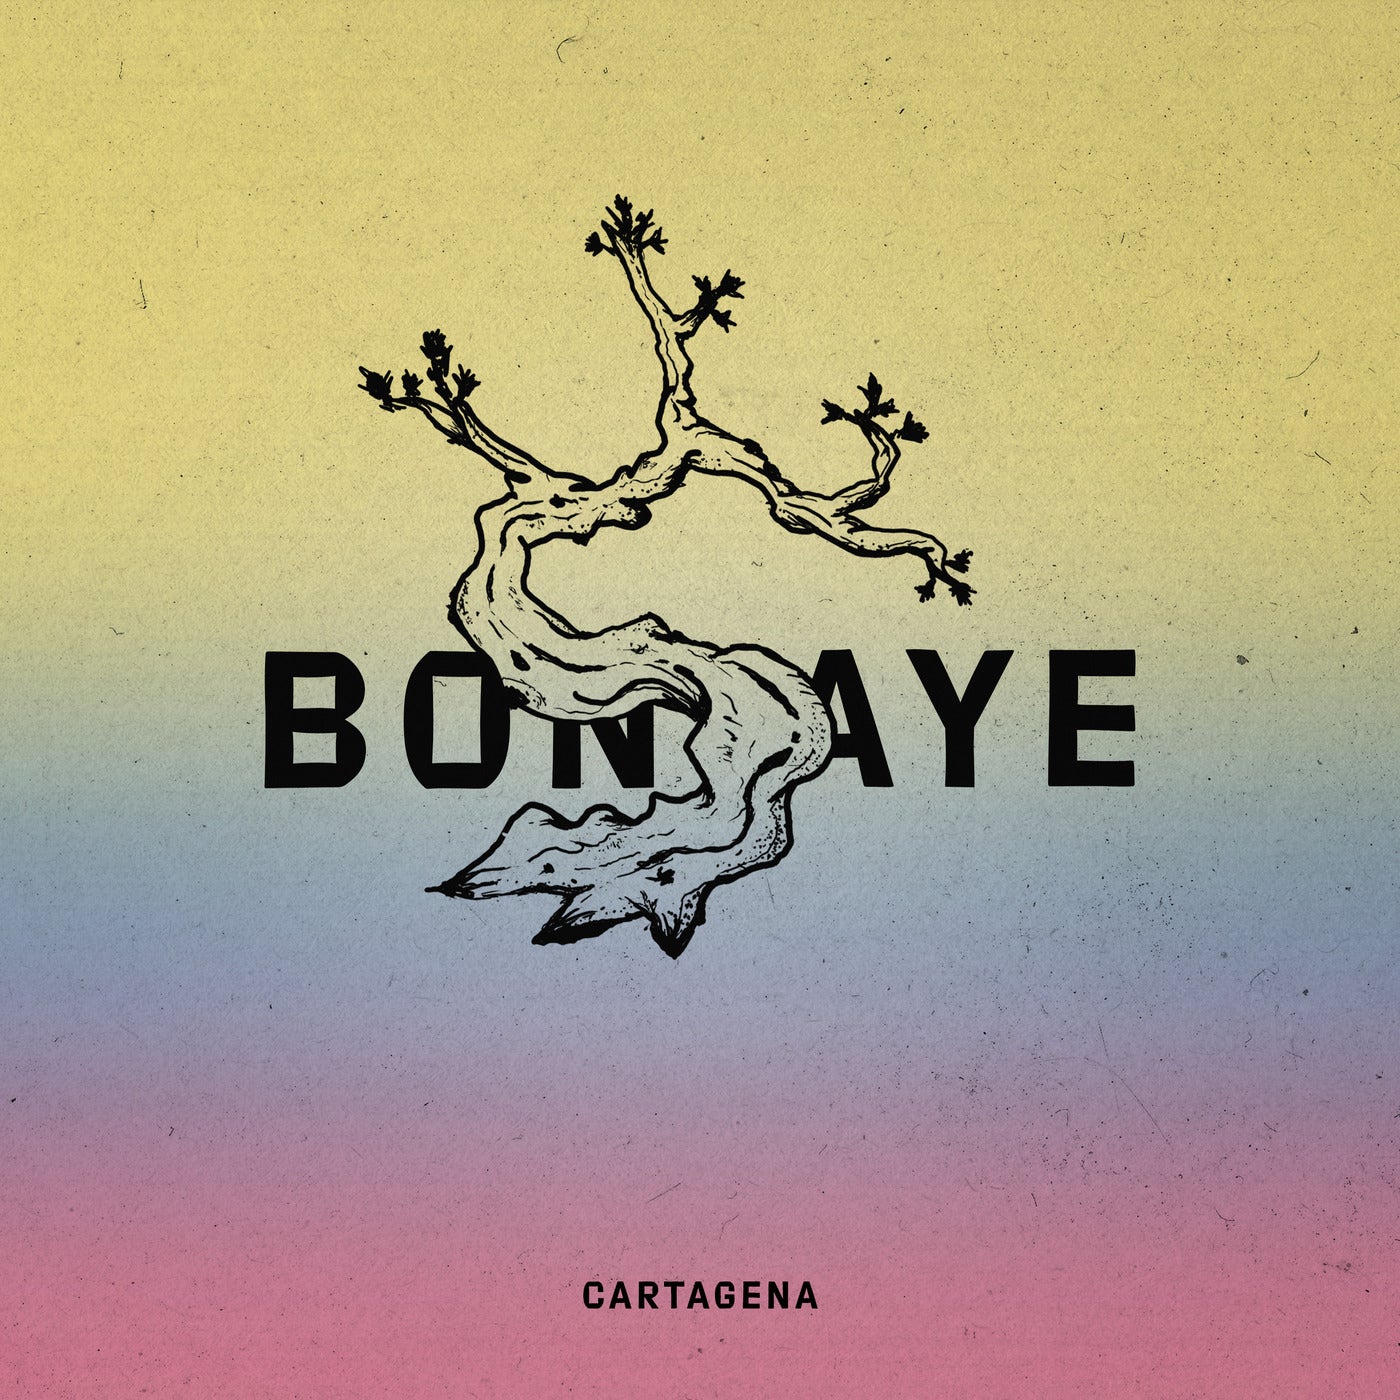 Bonsaye music download - Beatport